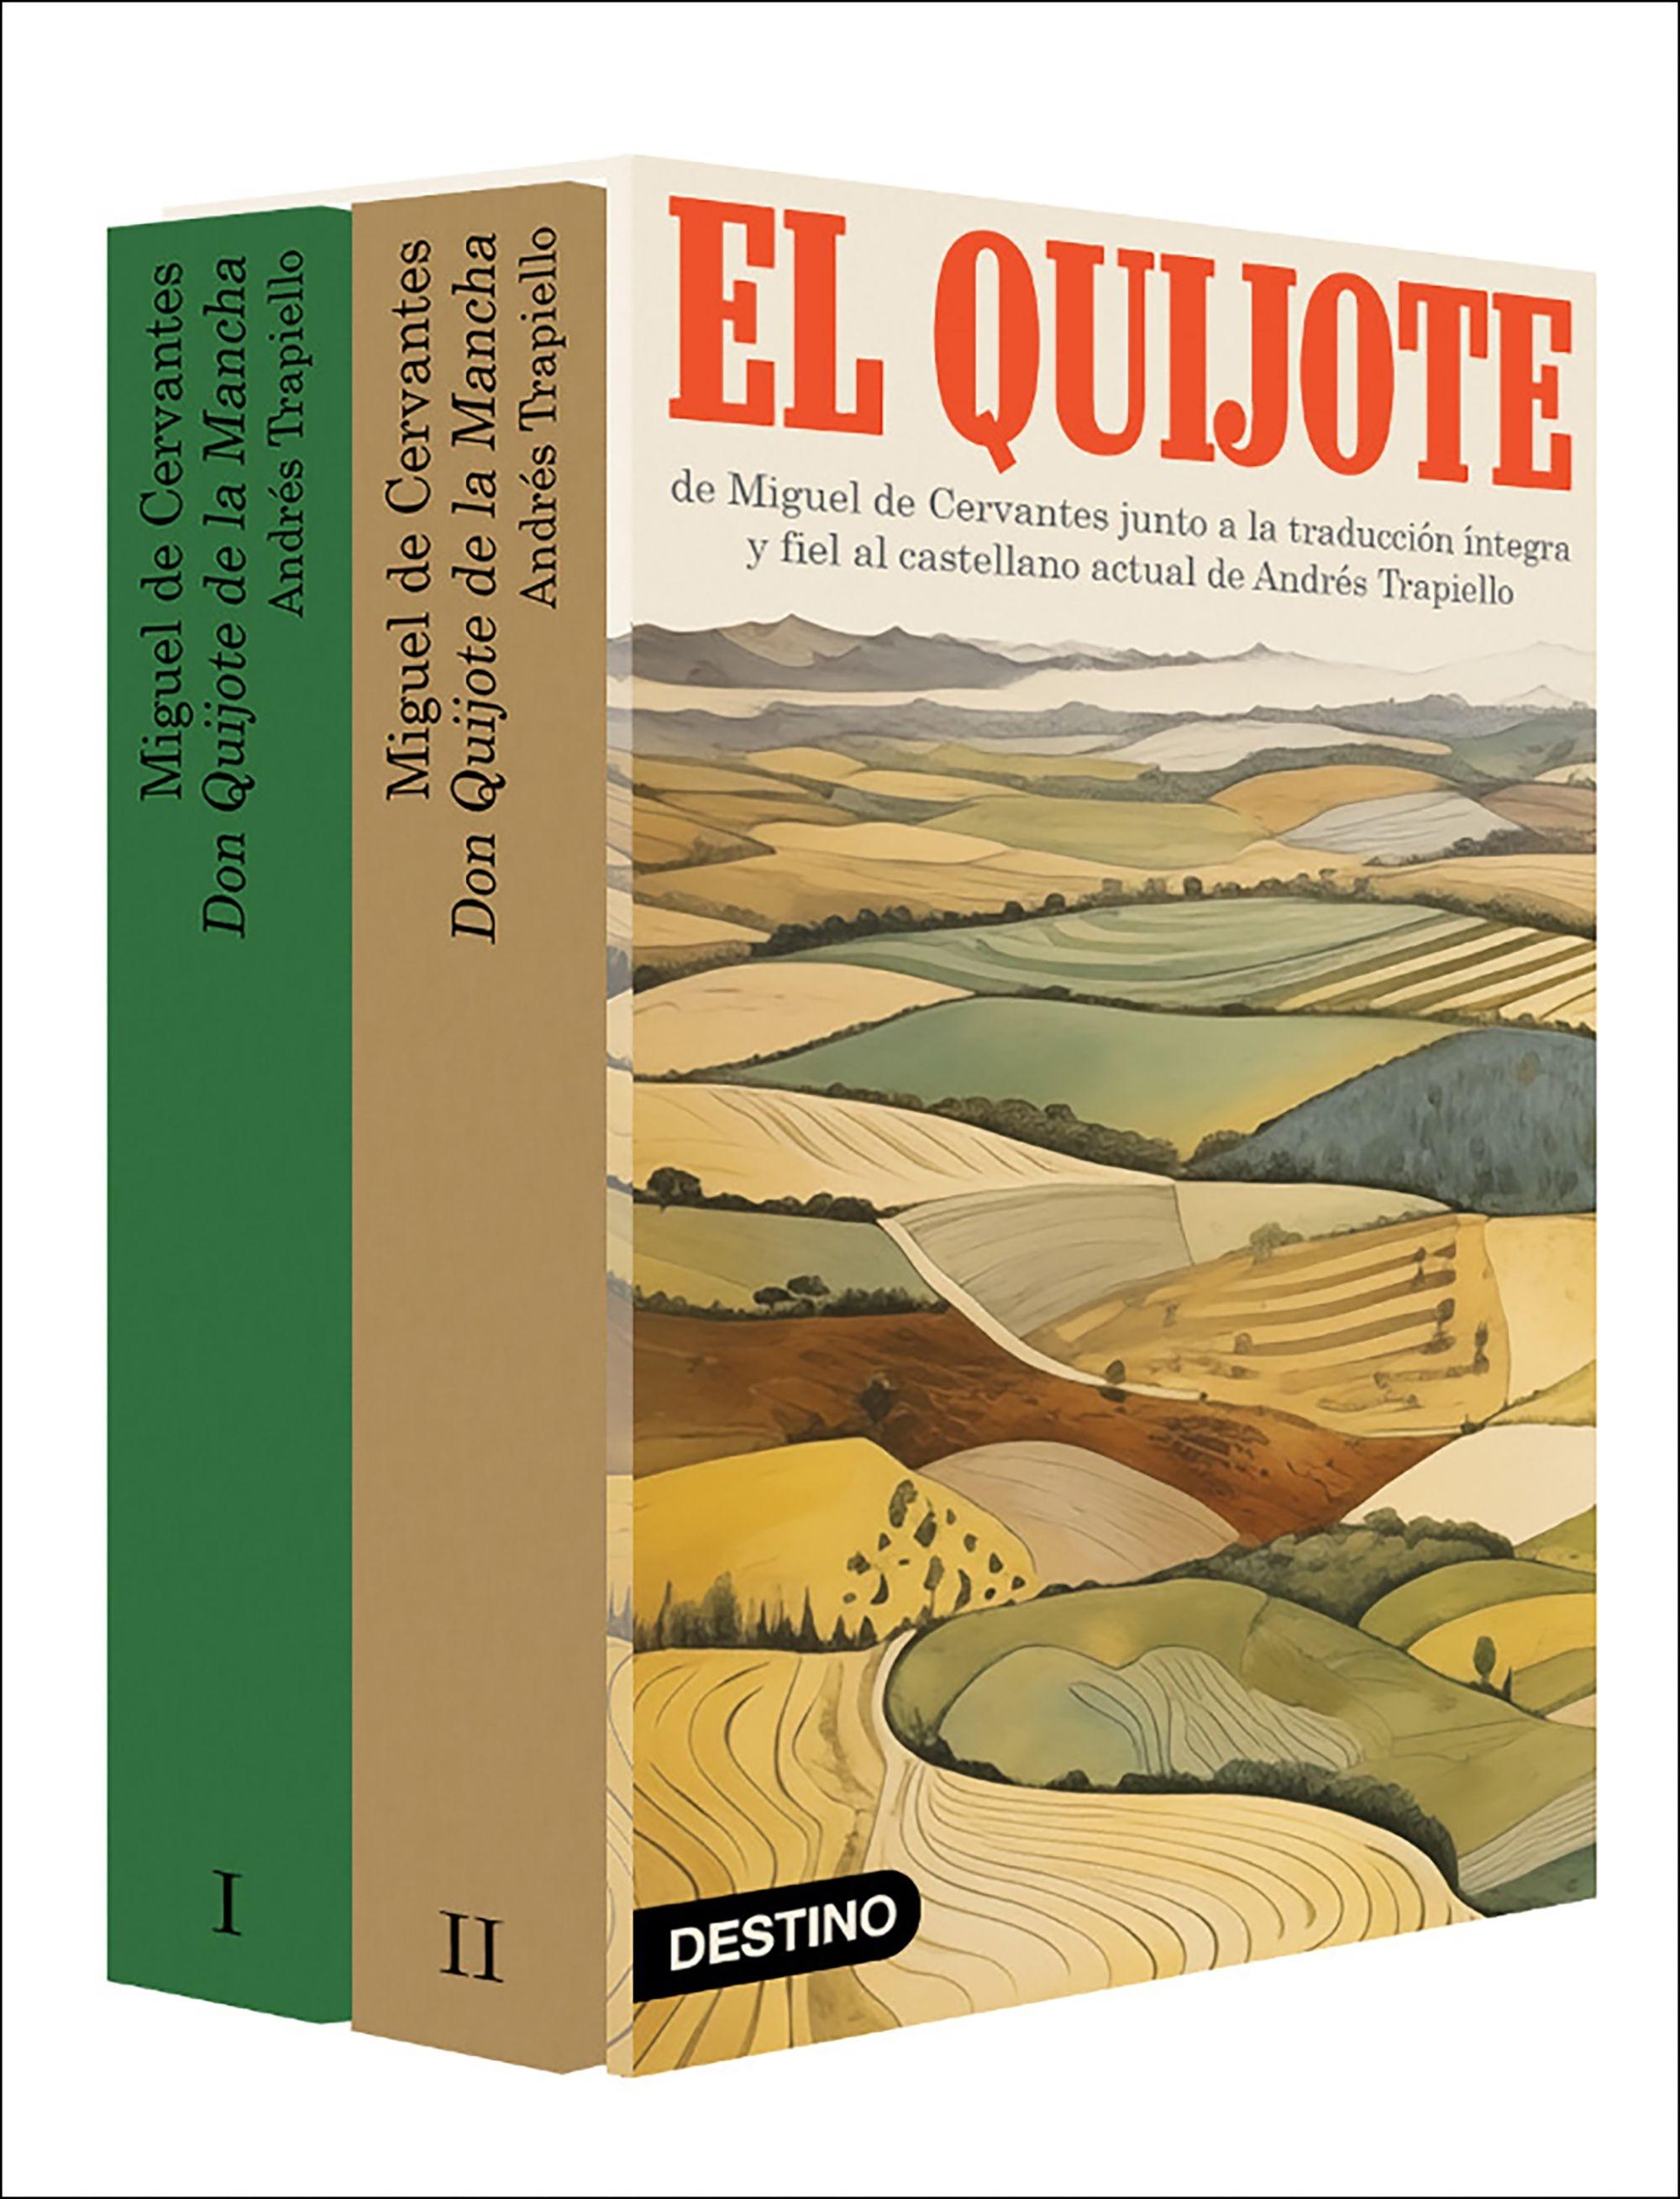 Don Quijote de la Mancha "Original de Cervantes y traducción íntegra y fiel de Andrés Trapiello al"